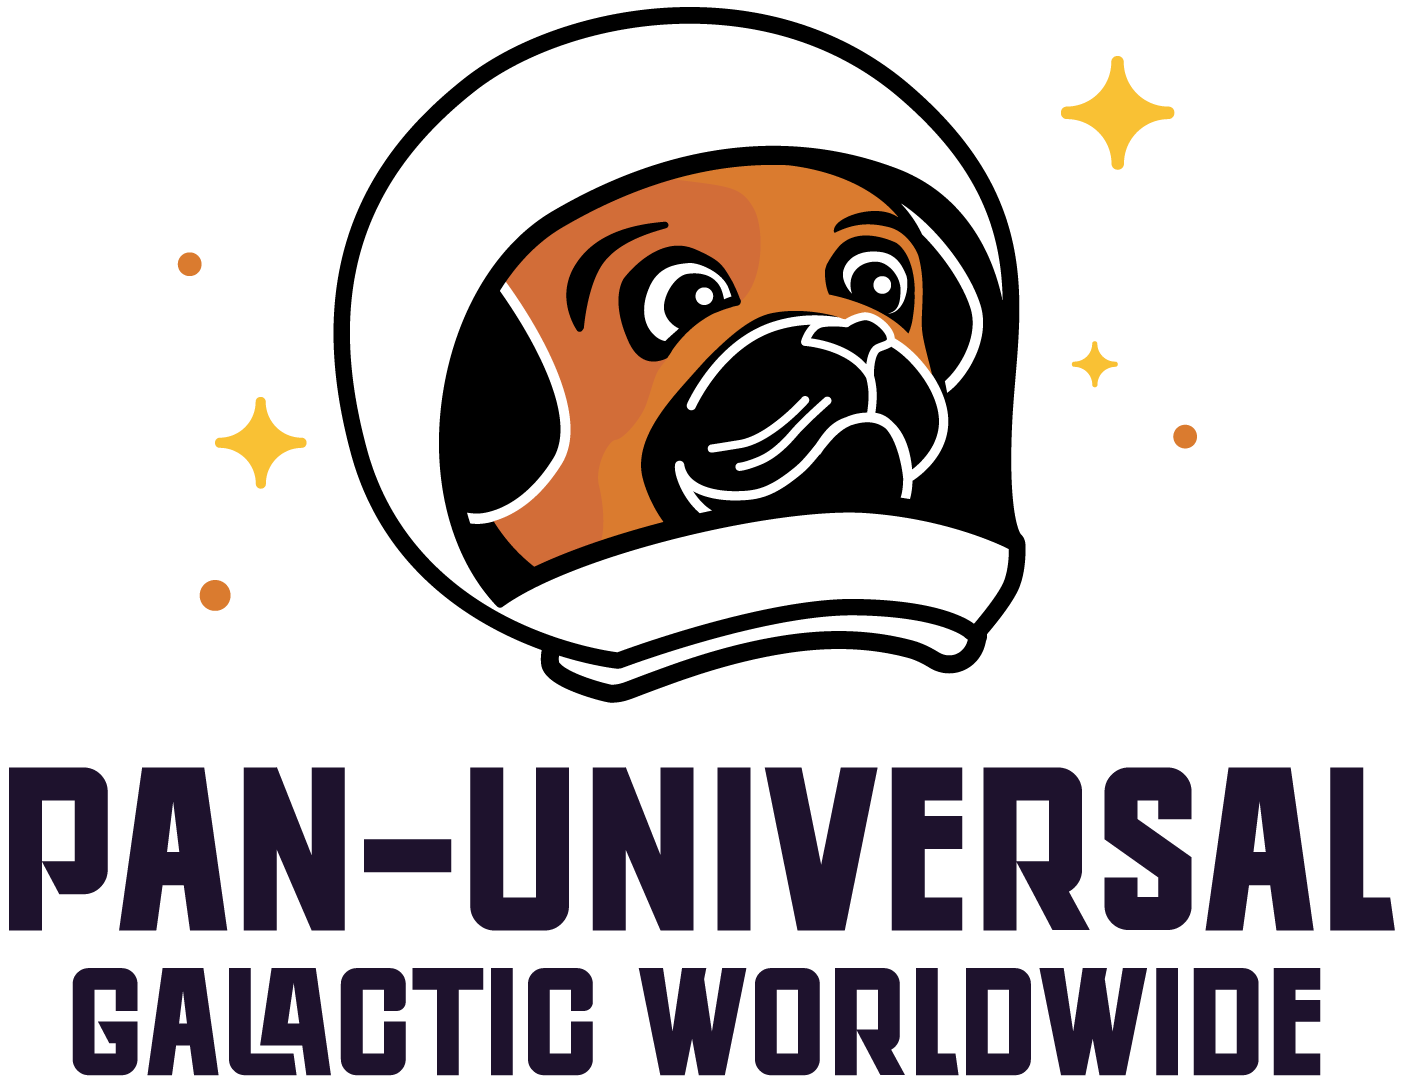 Pan-Universal Galactic Worldwide